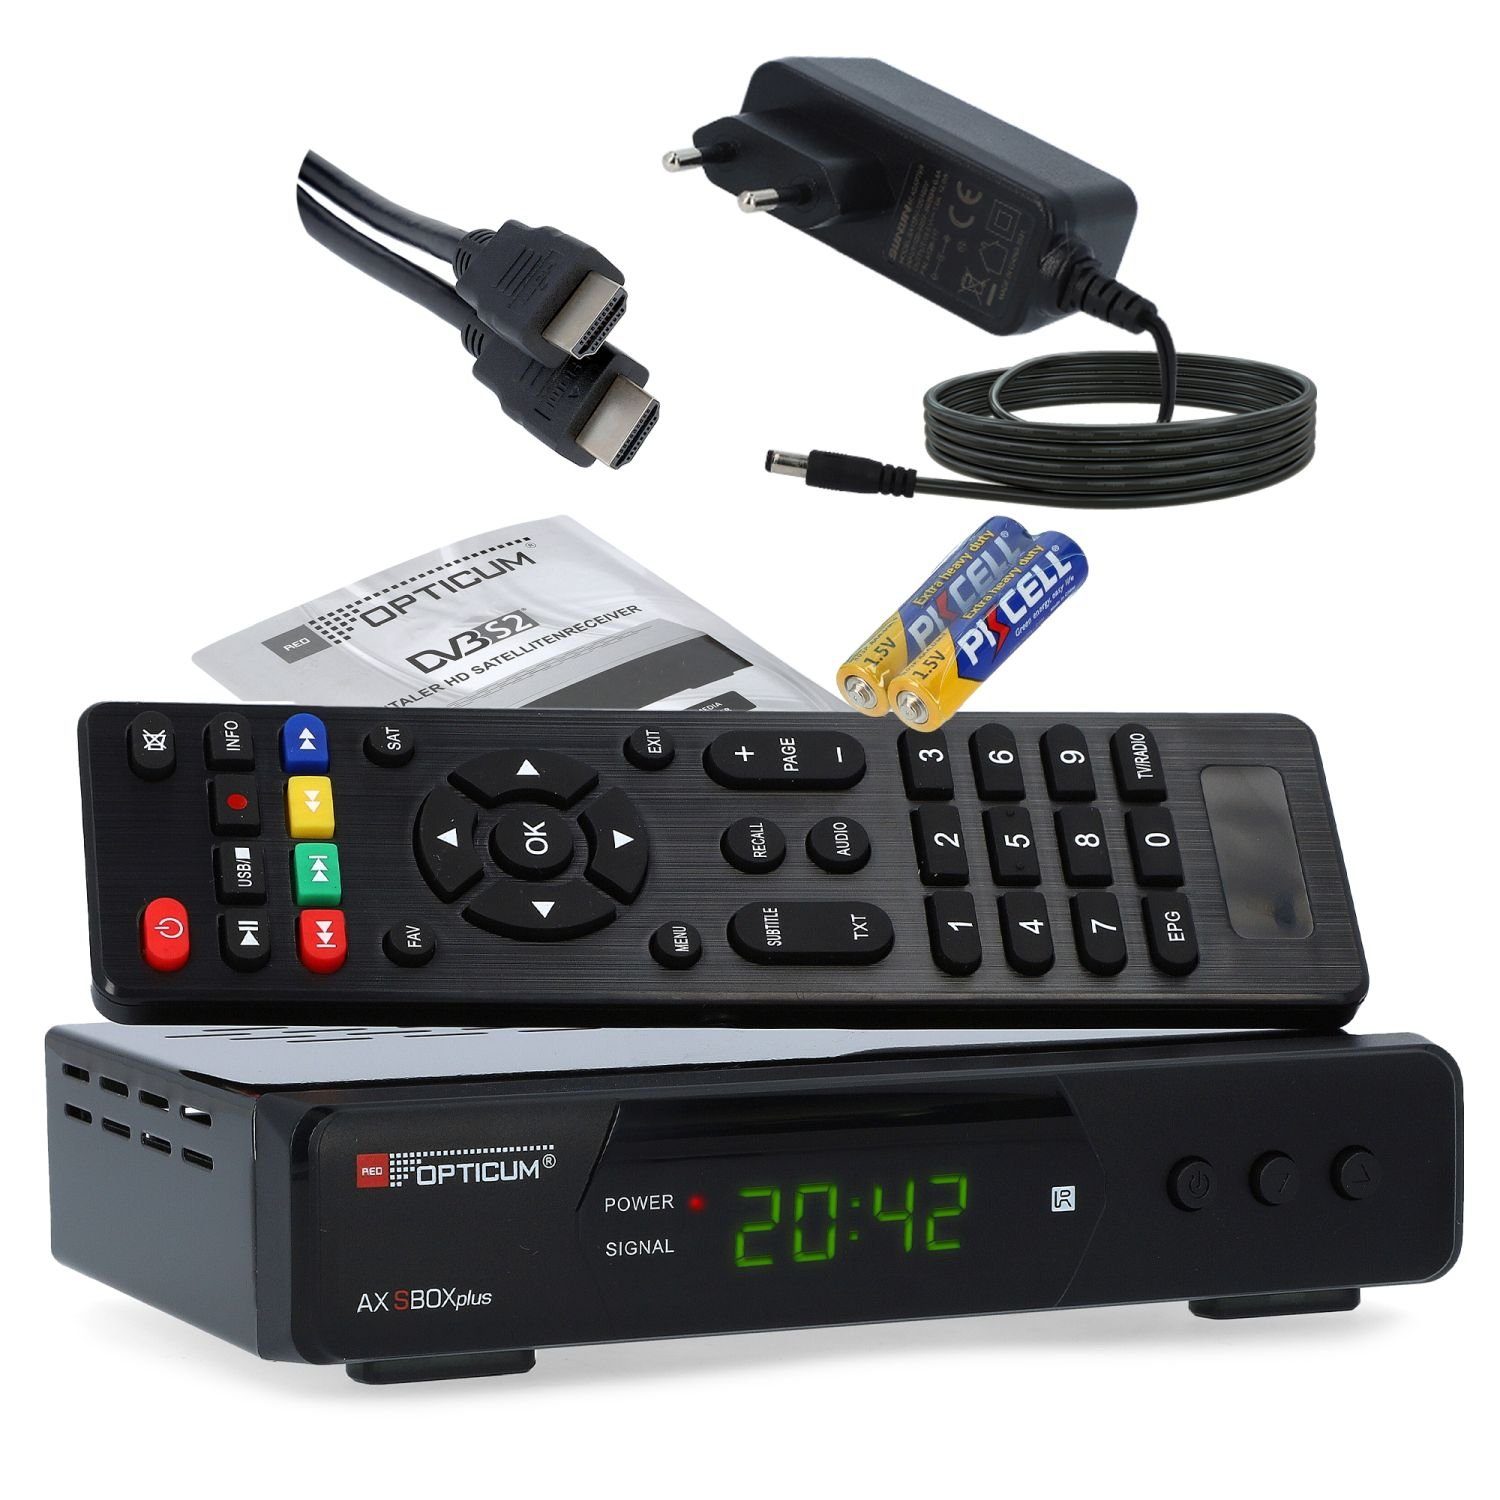 RED OPTICUM SBOX Plus mit PVR Aufnahmefunktion + HDMI Kabel SAT-Receiver